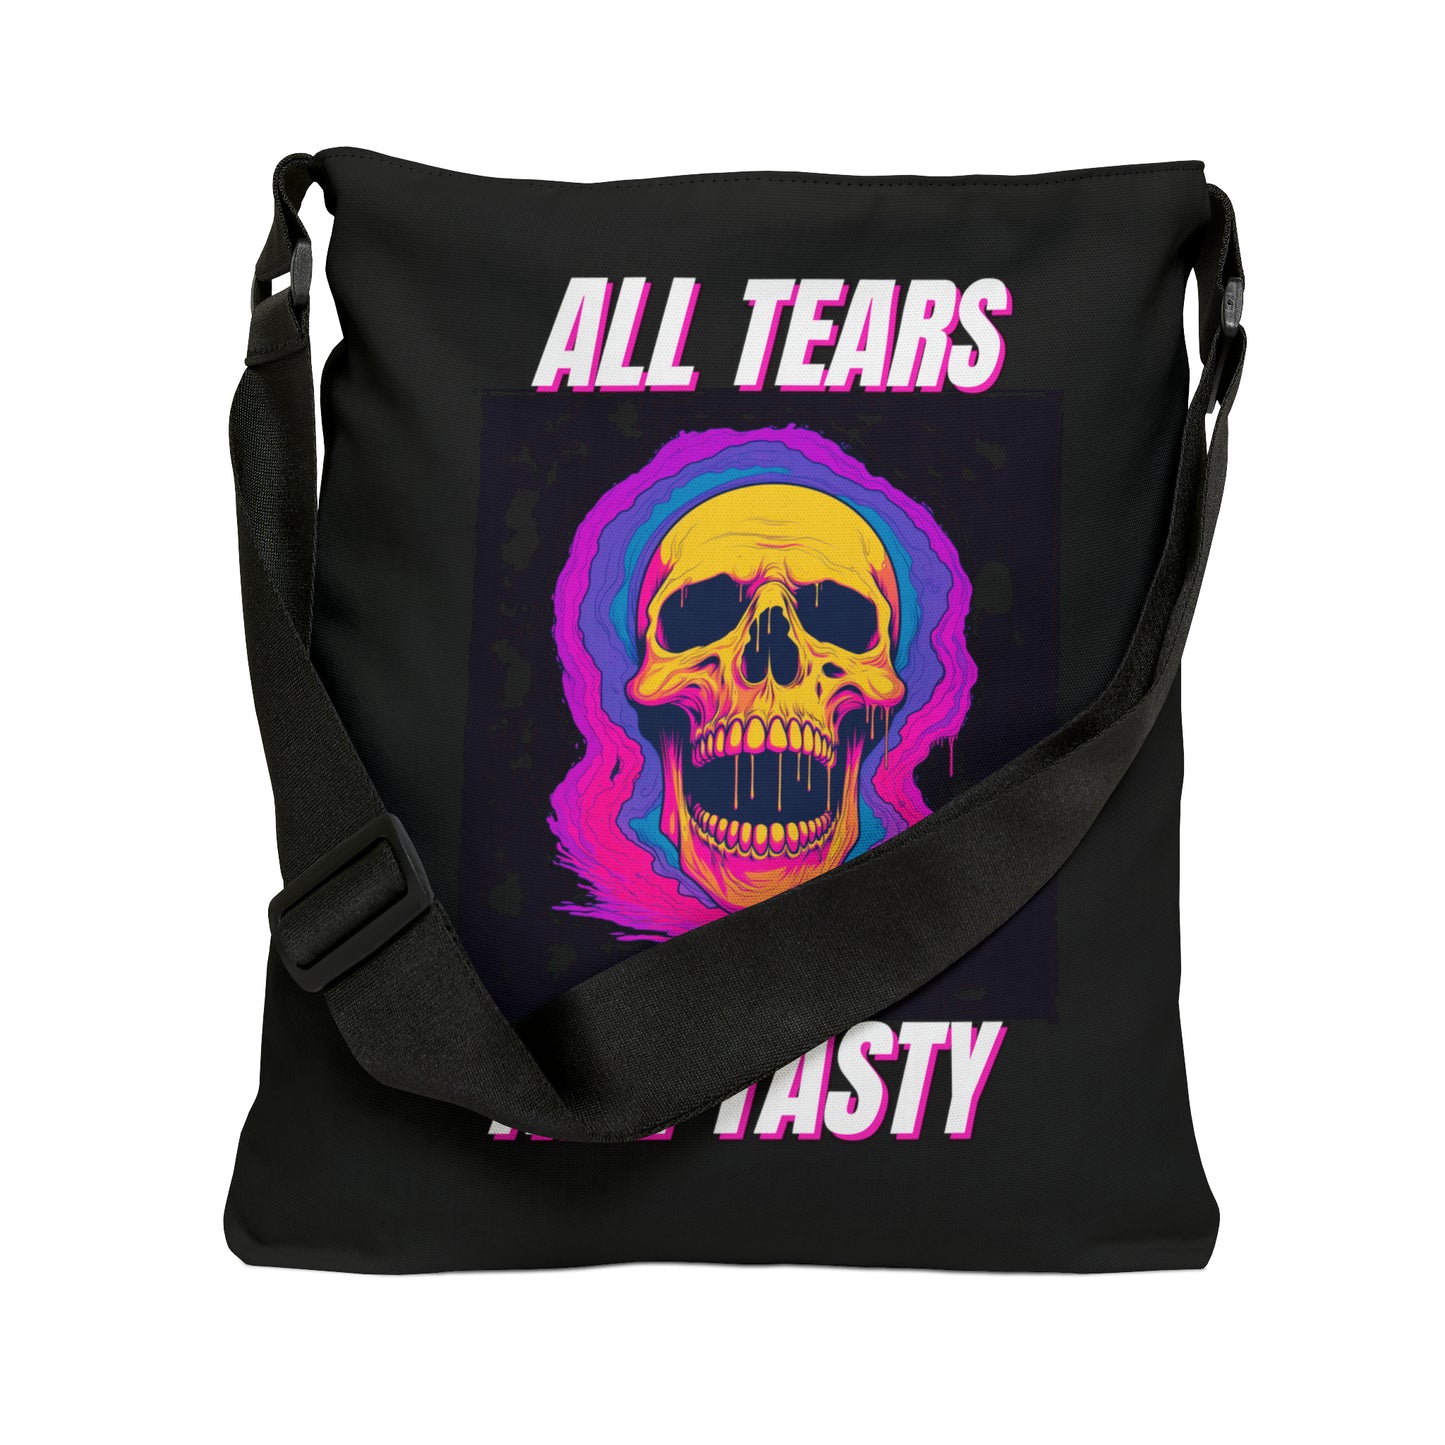 All Tears Are Tasty Adjustable Tote Bag (AOP)